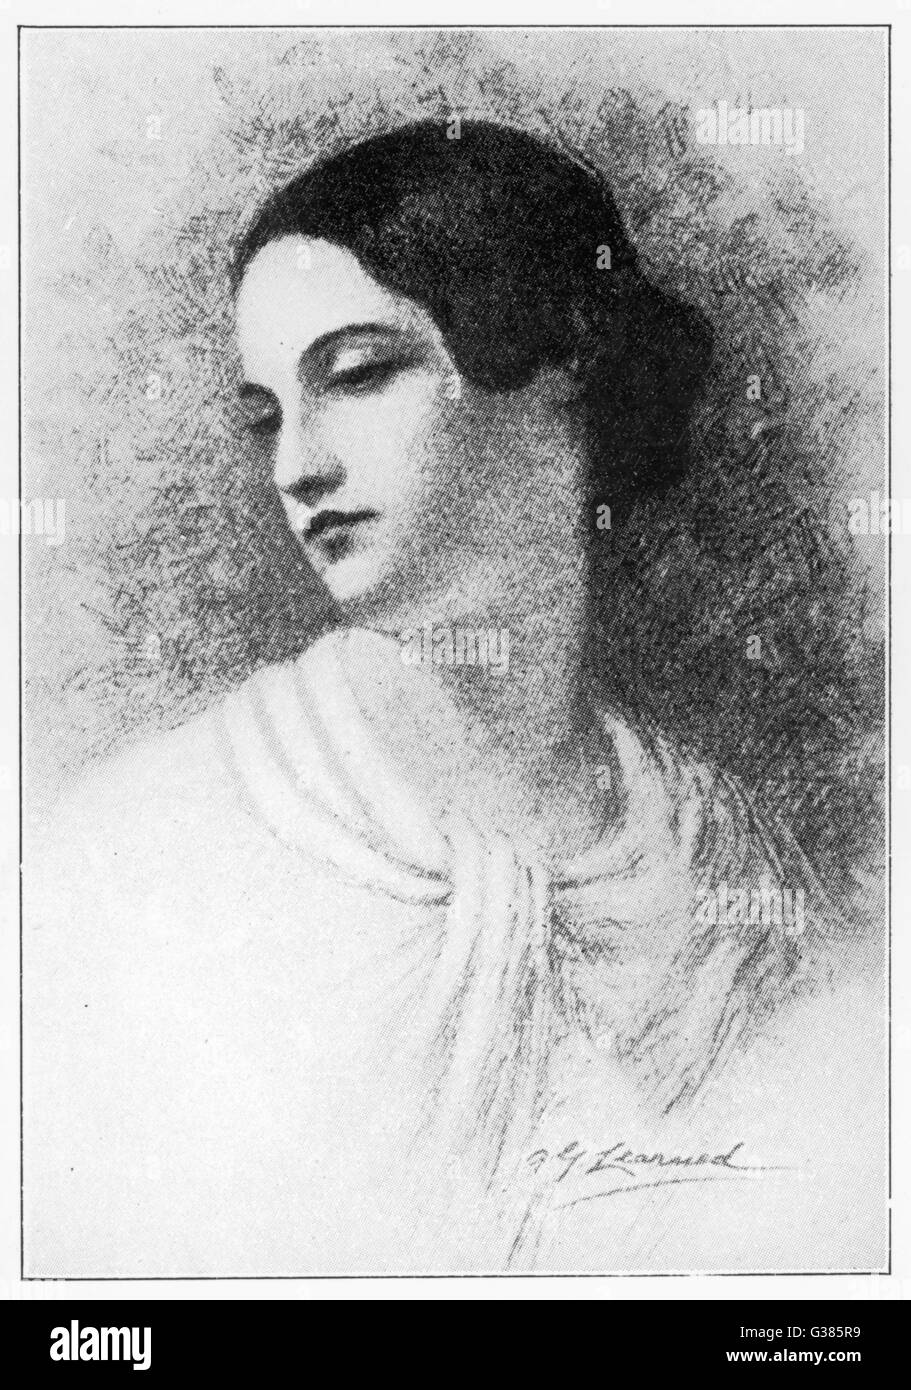 Virginie épouse de POE, Edgar Allan Poe meurt de la tuberculose à l'âge de 23 ans, ainsi que la folie de son mari Date : 1822 - 1845 Banque D'Images